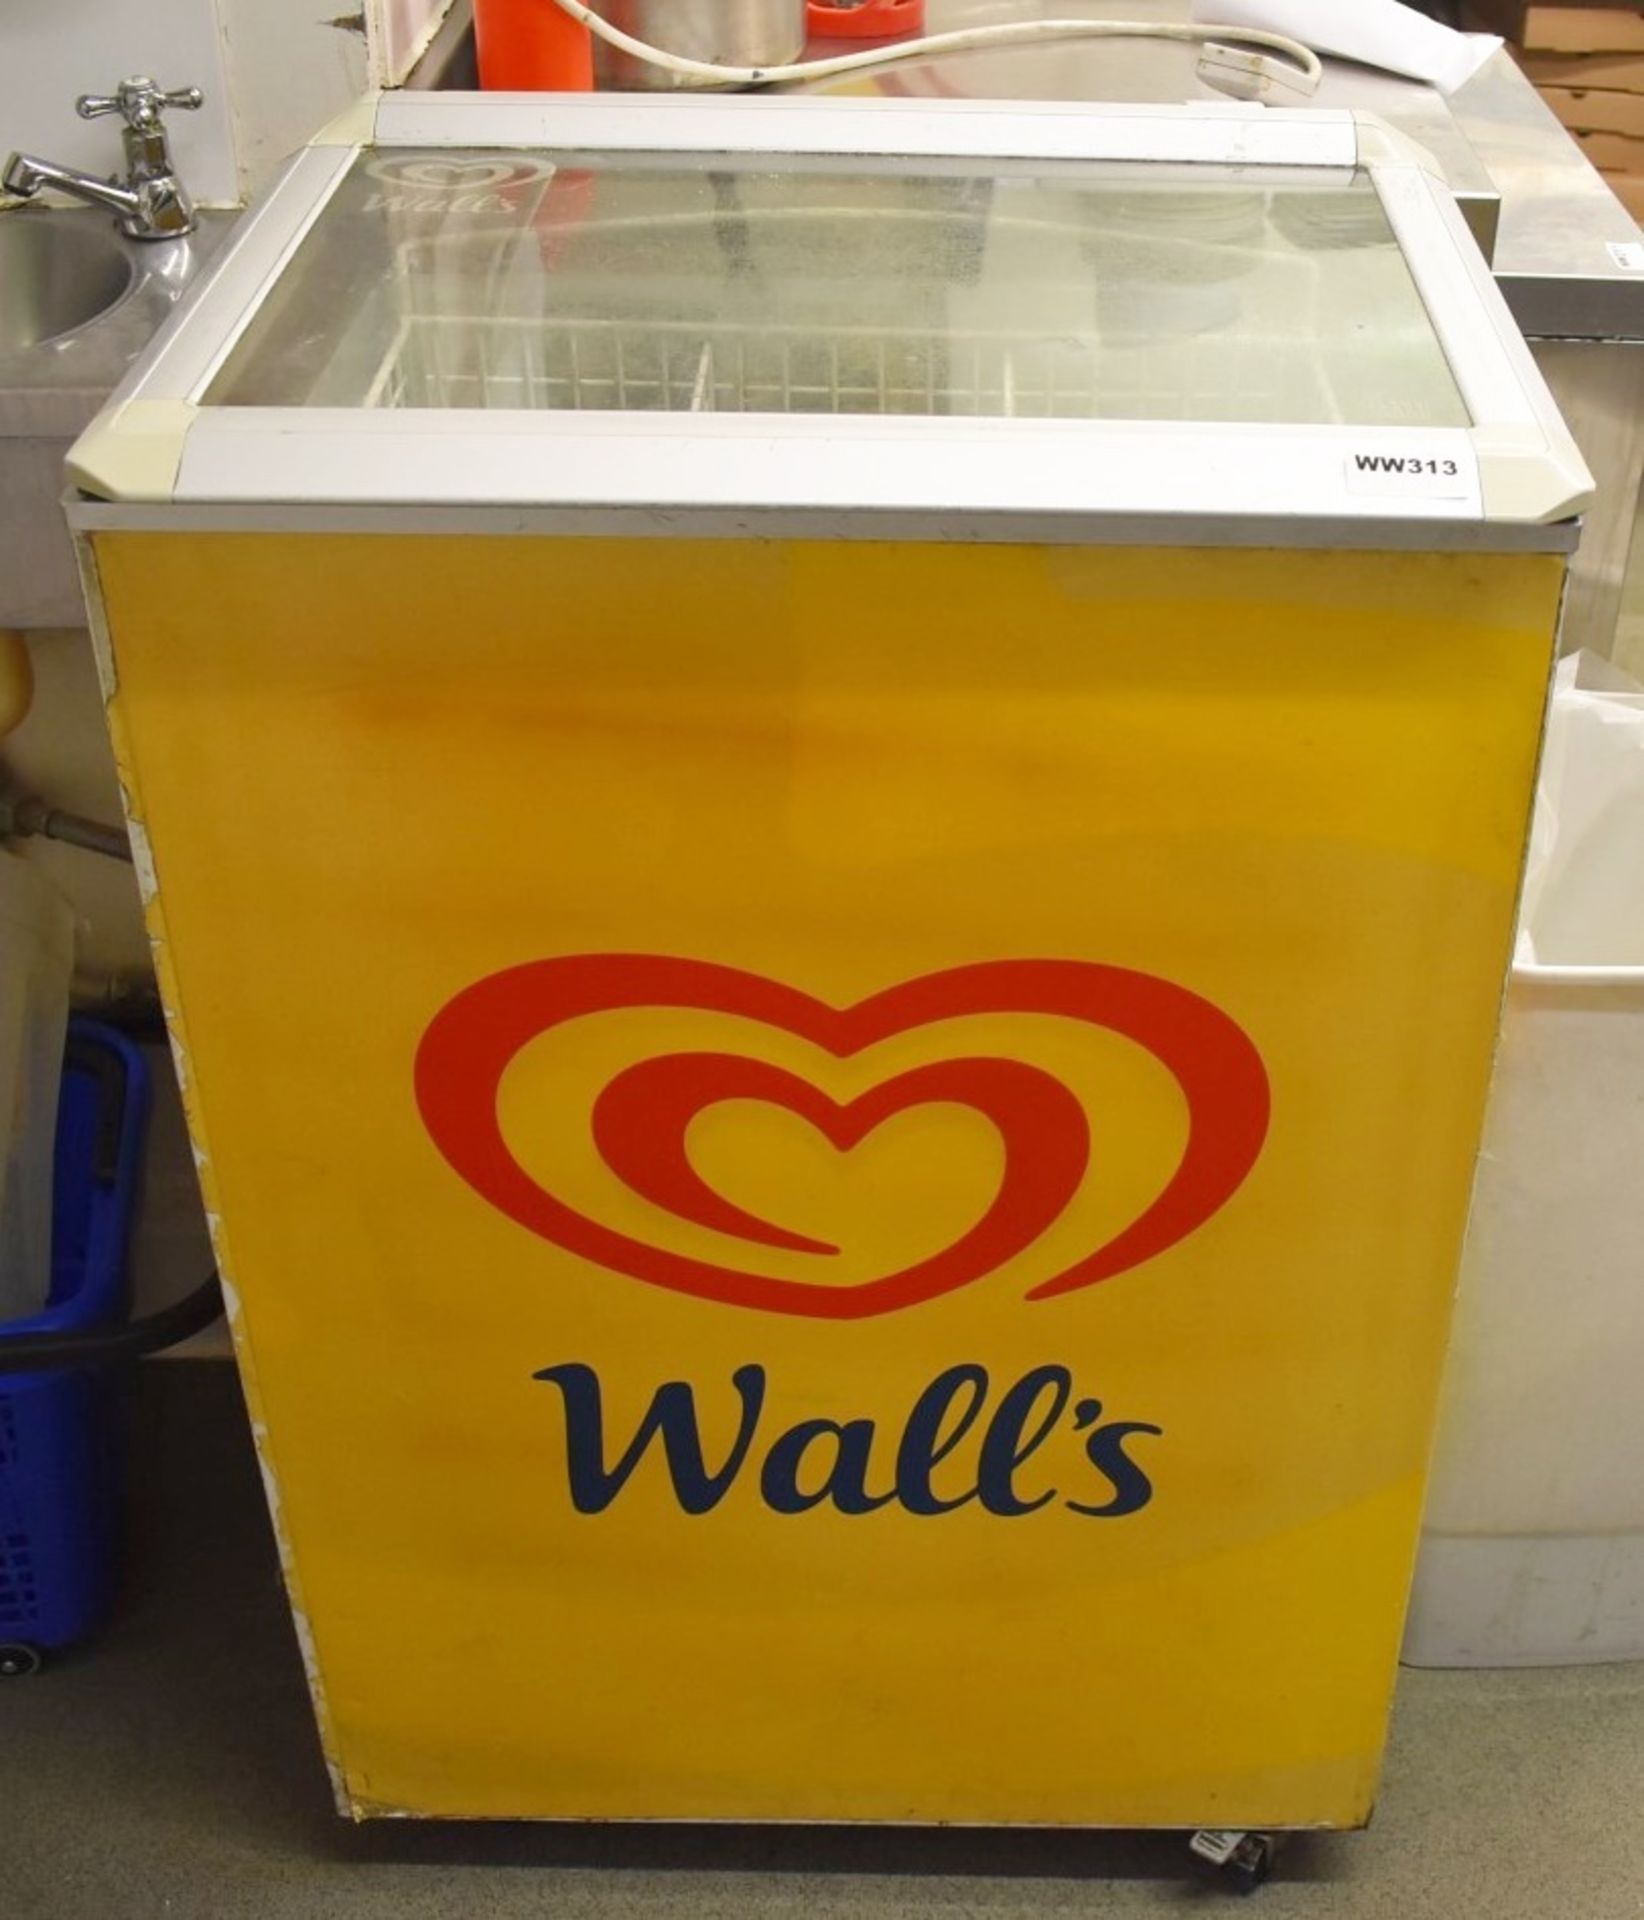 1 x Walls Ice Cream Freezer With Clear Lid - H93 x W63 x D44 cms - Ref WW313 - CL520 - Location: